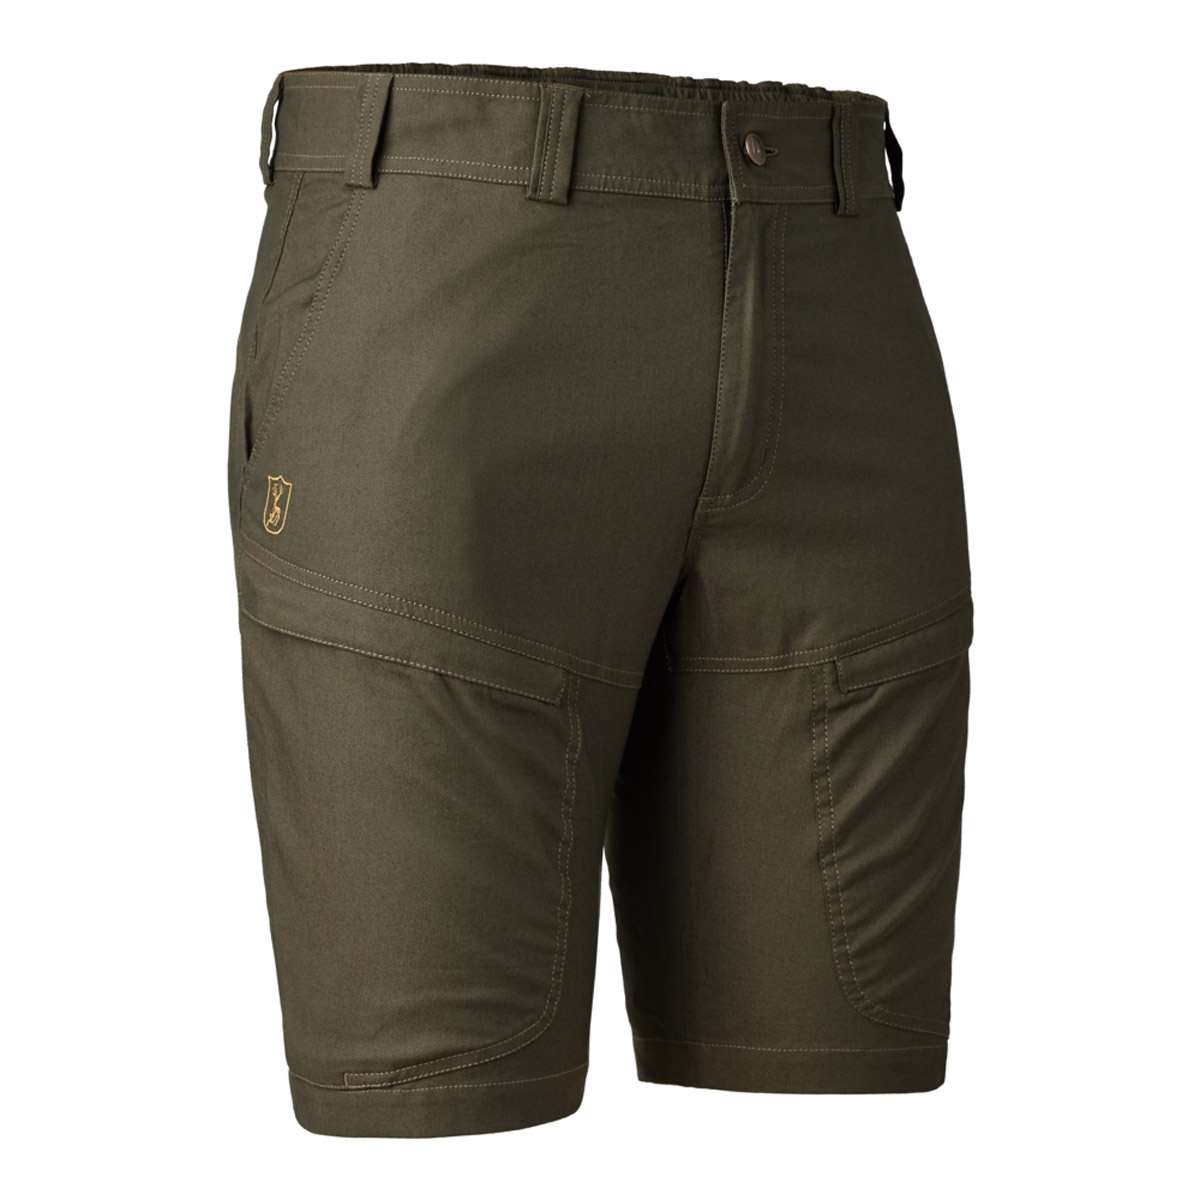 Die Matobo Shorts für Herren ist die ideale Sommerhose für Jagd und andere Outdooraktivitäten.